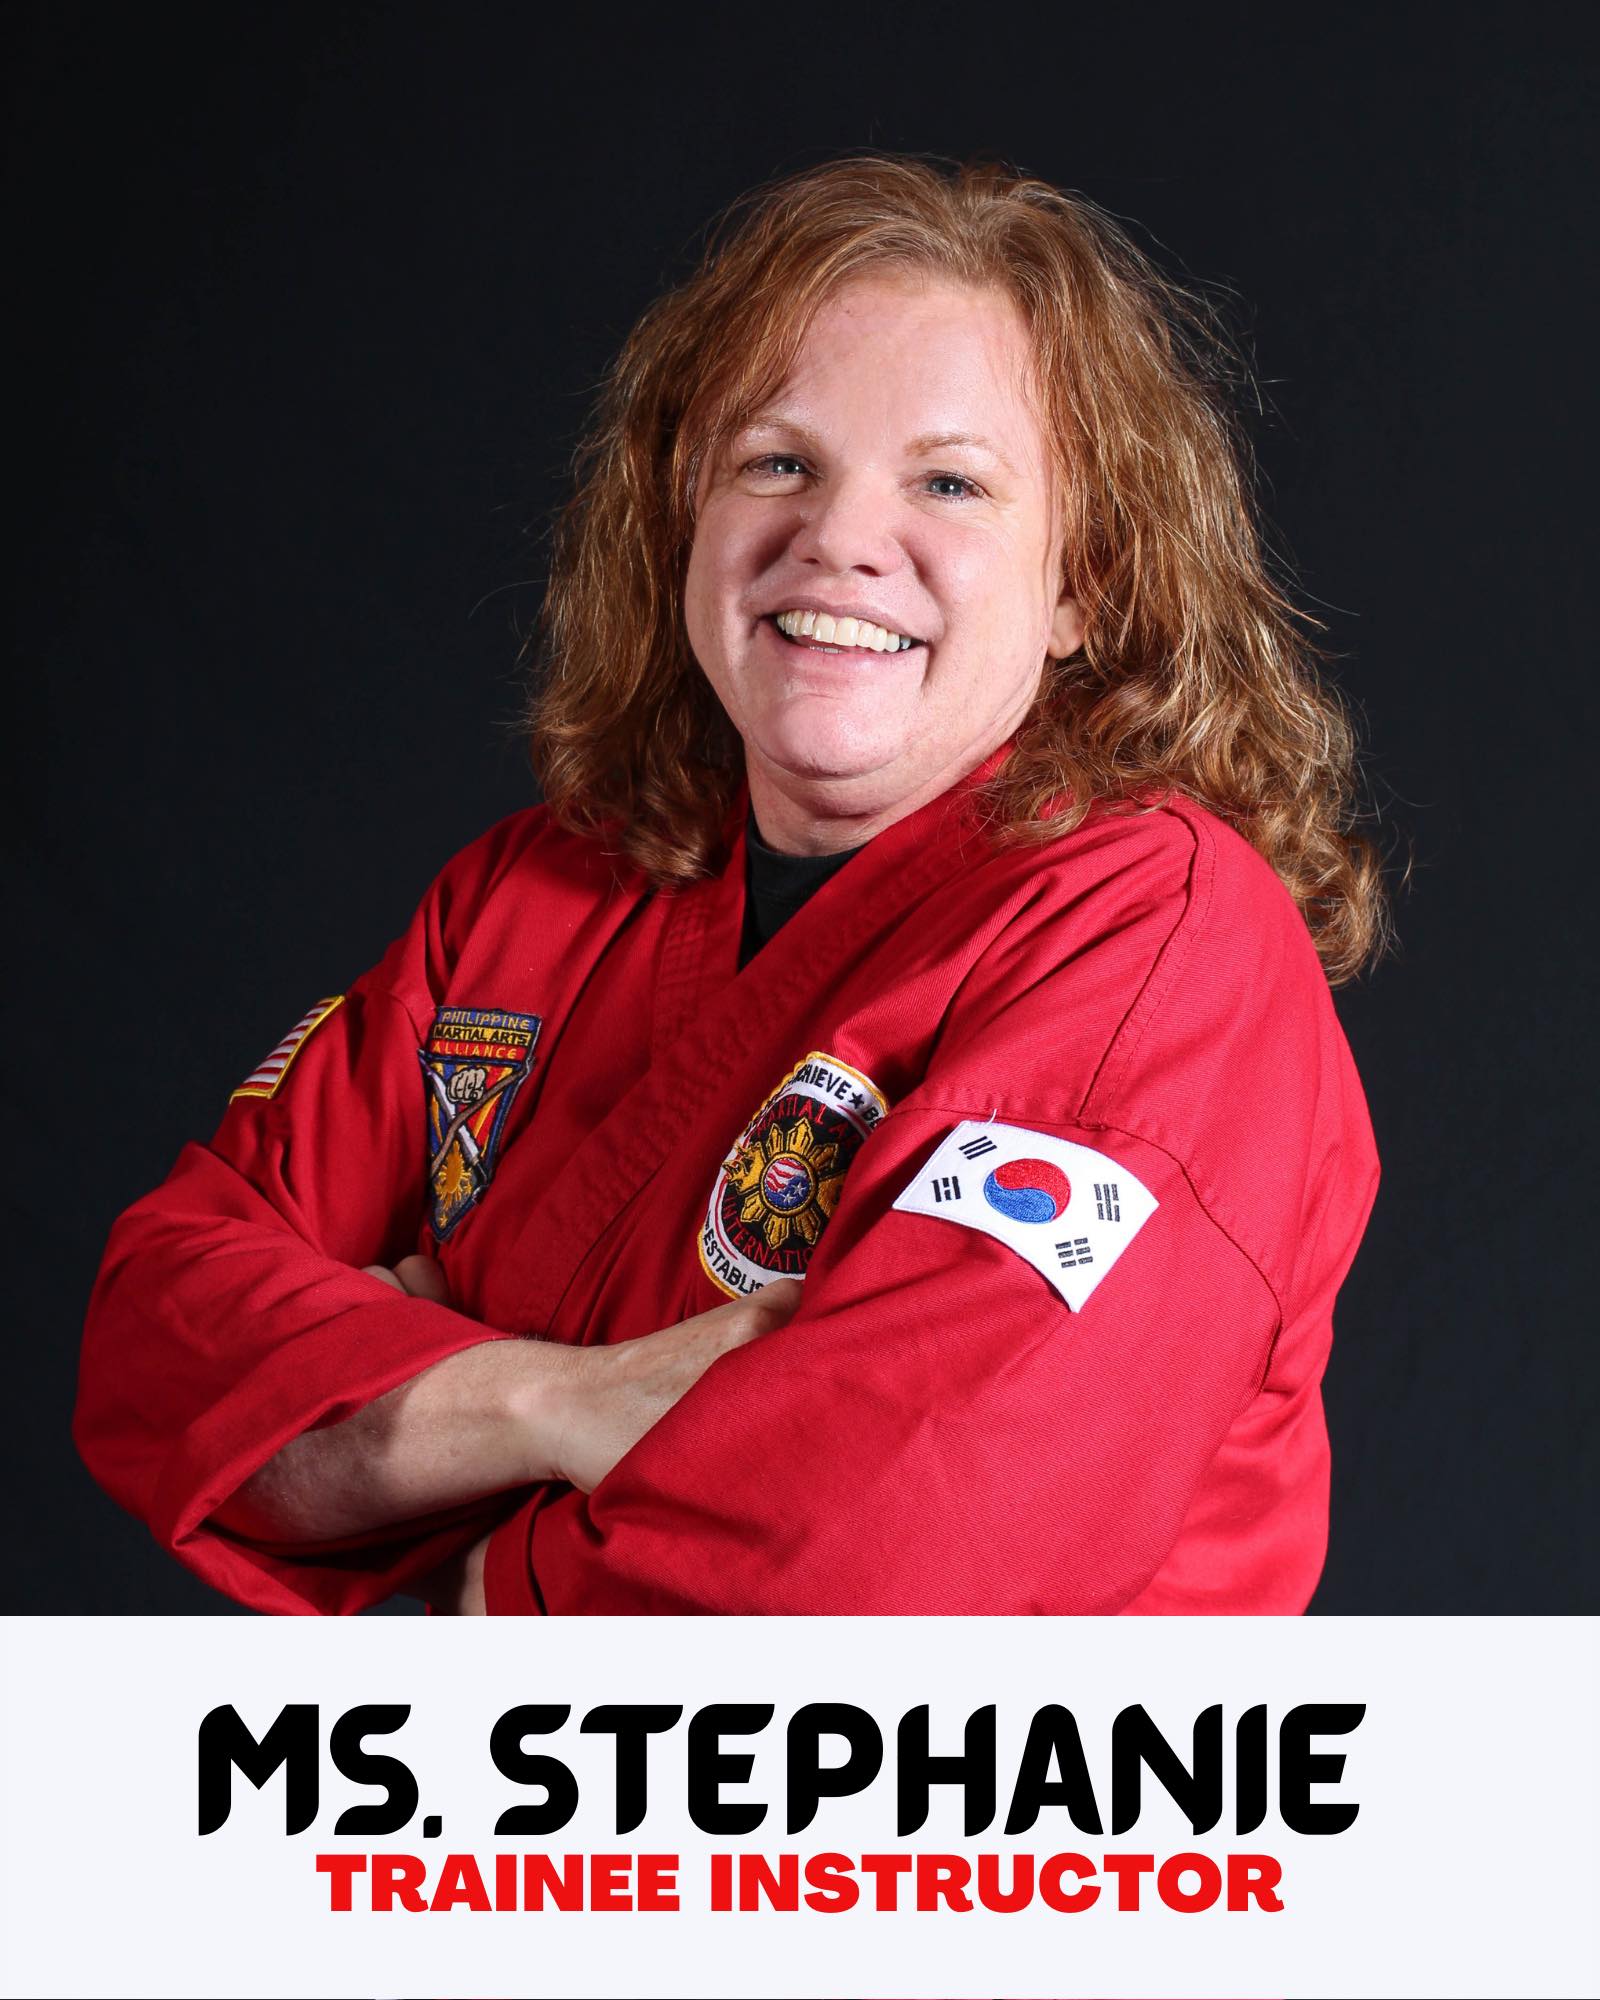 Ms. Stephanie